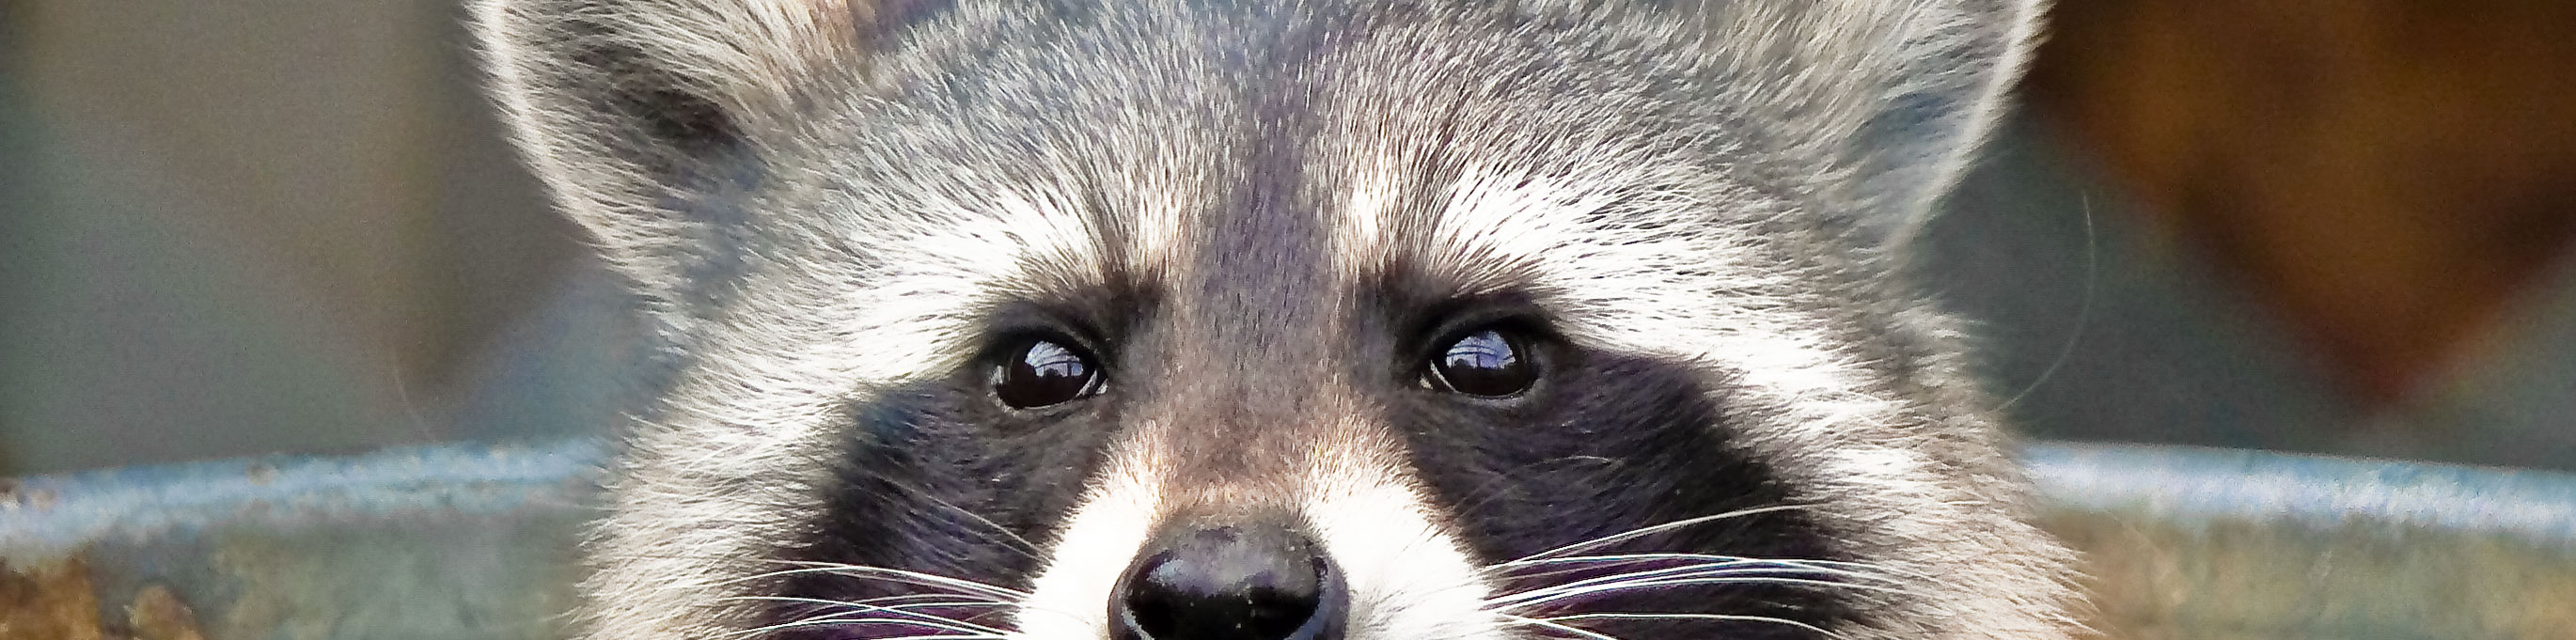 image of raccoon